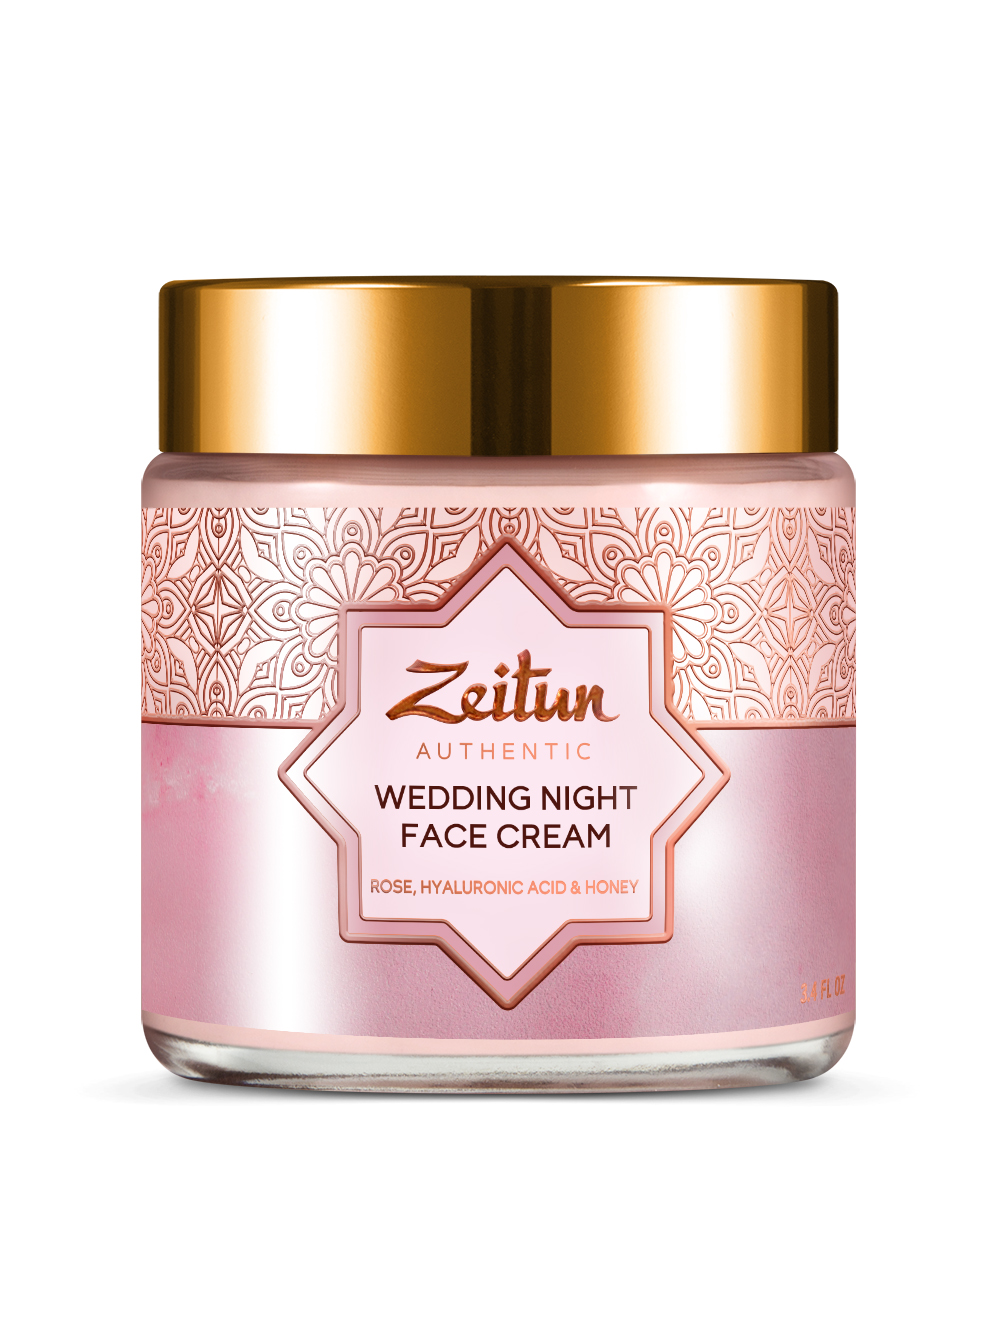 Zeitun Ночной питательный крем Wedding Day, 100 мл (Zeitun, Authentic) цена и фото